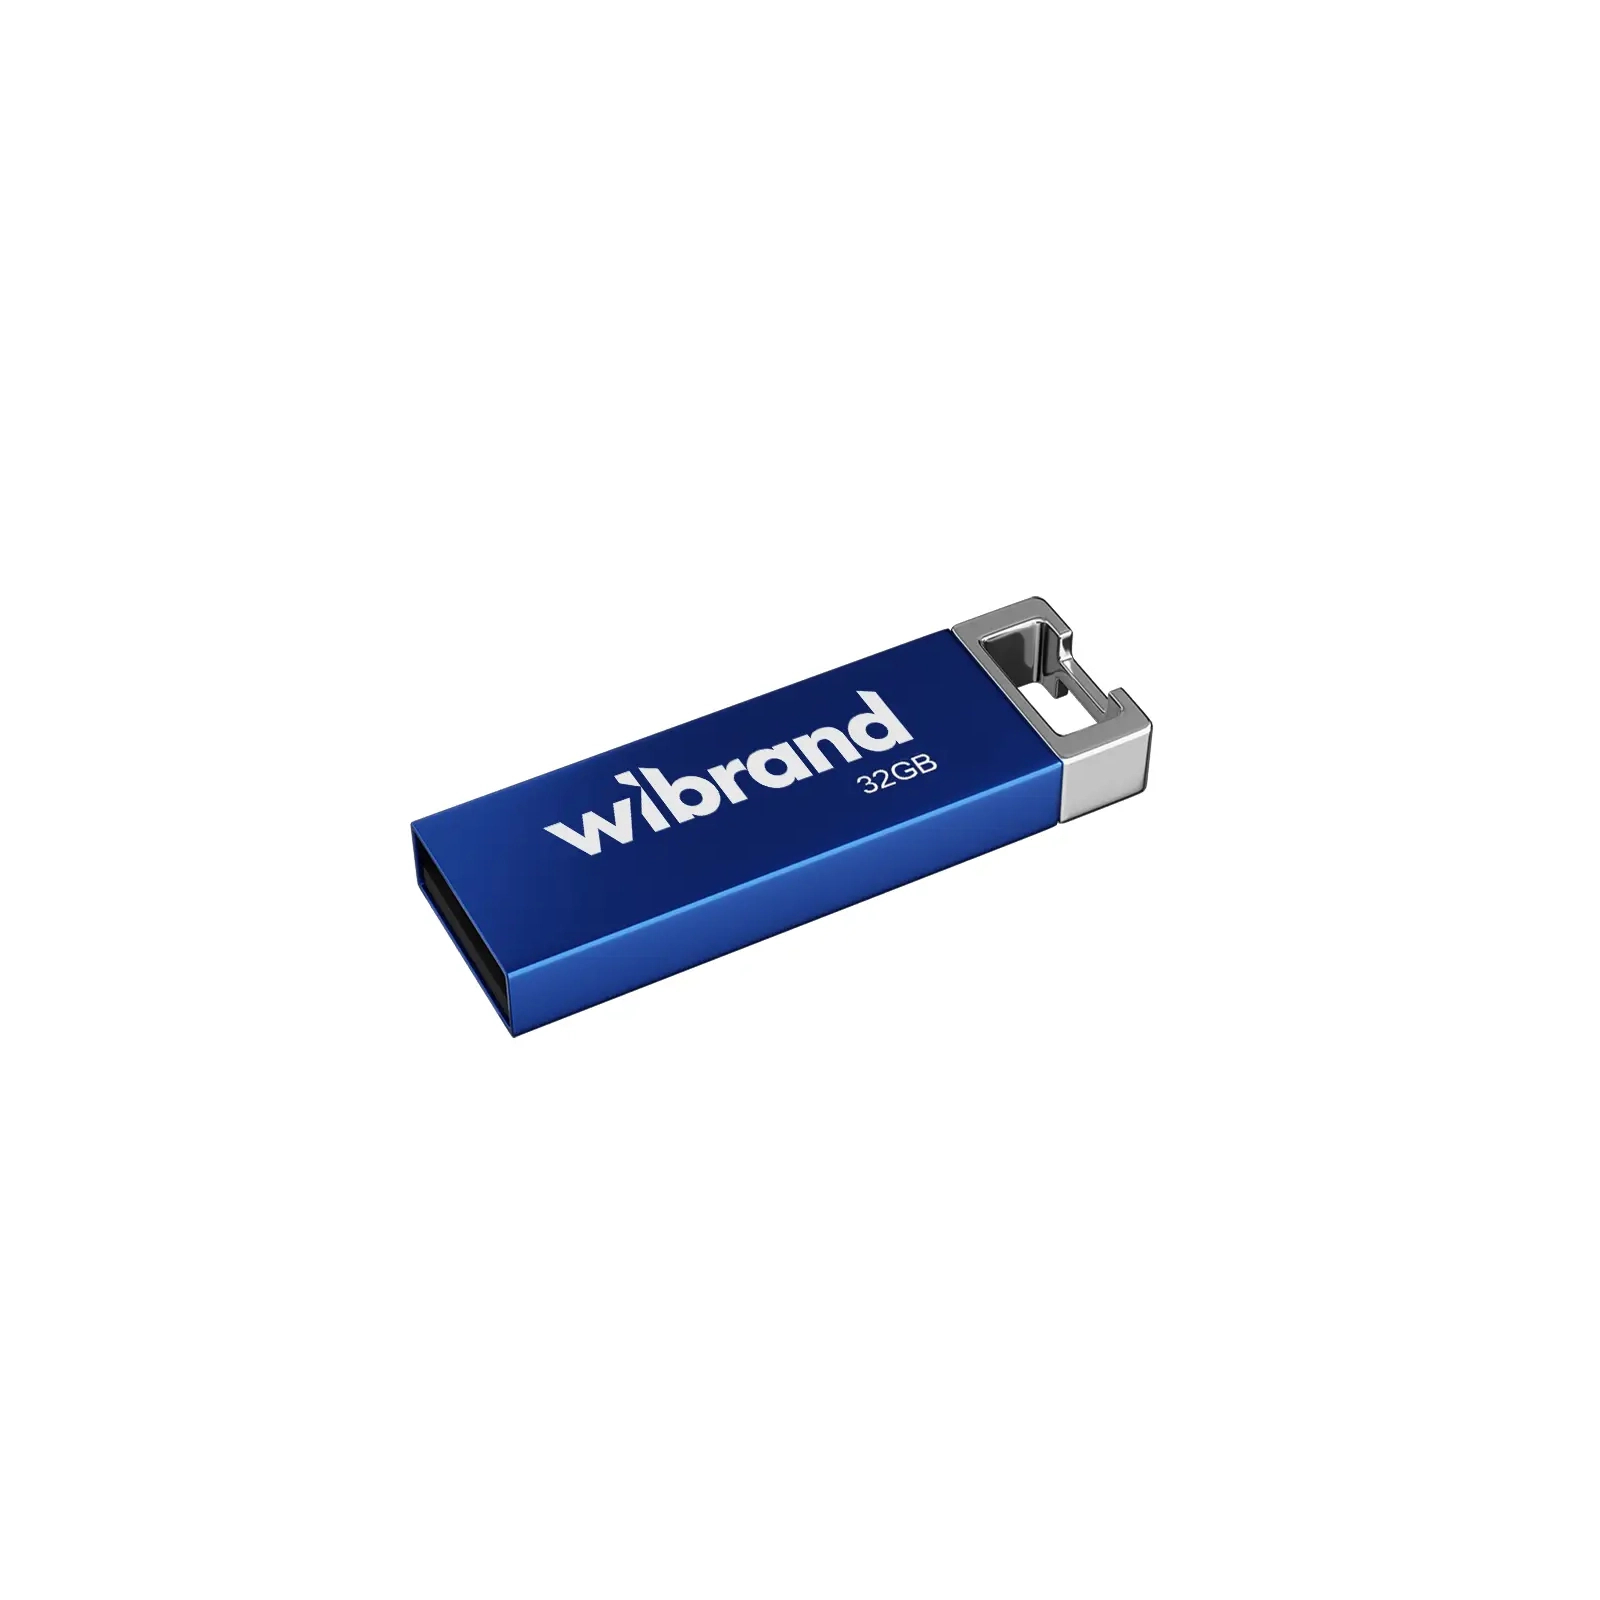 USB флеш накопитель Wibrand 32GB Chameleon Blue USB 2.0 (WI2.0/CH32U6U)